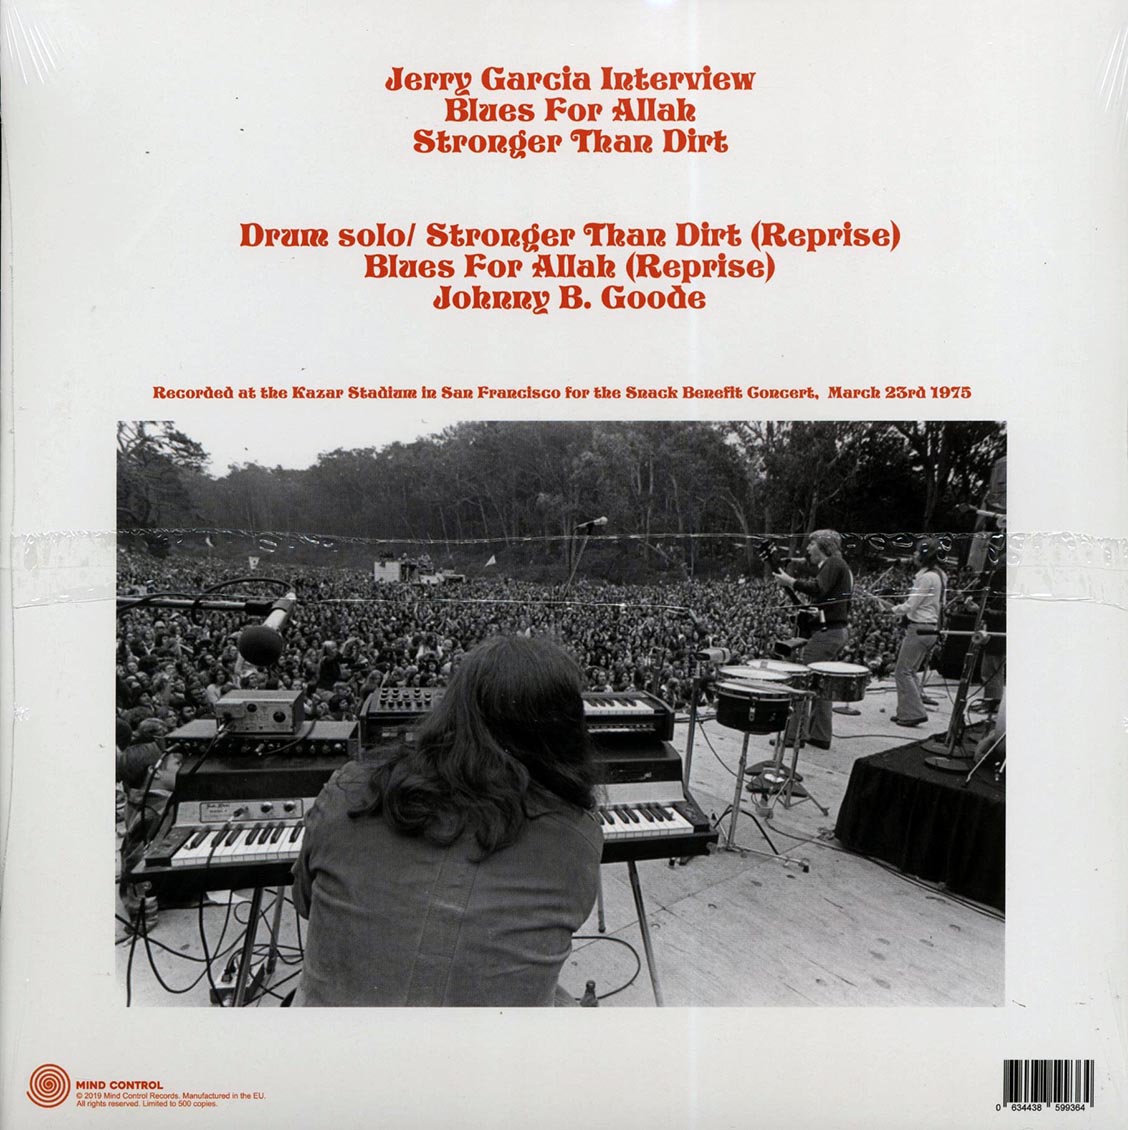 Grateful Dead - The Snack Benefit Broadcast 1975 (ltd. 500 copies made) (orange vinyl) - Vinyl LP, LP